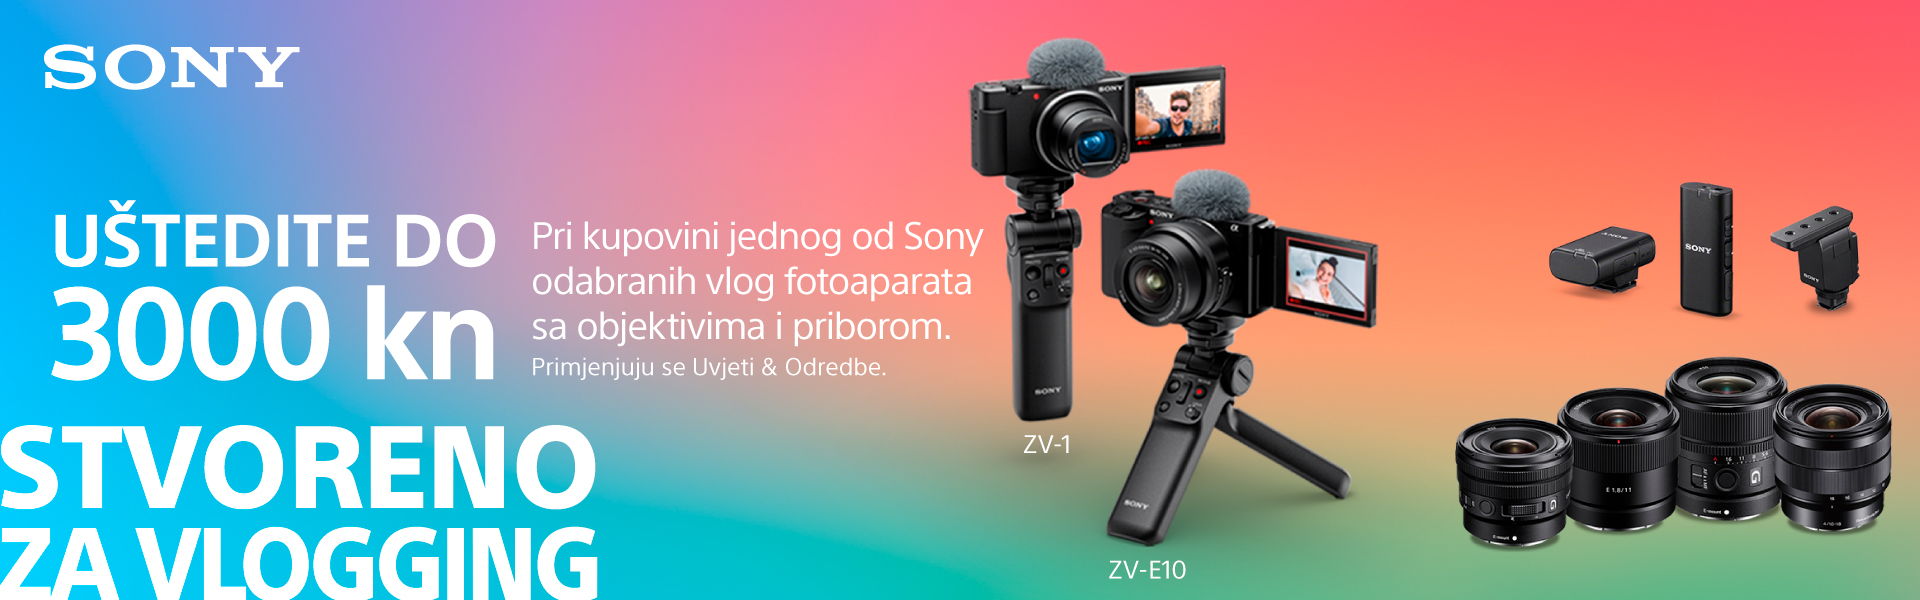 Sony VLOG promo